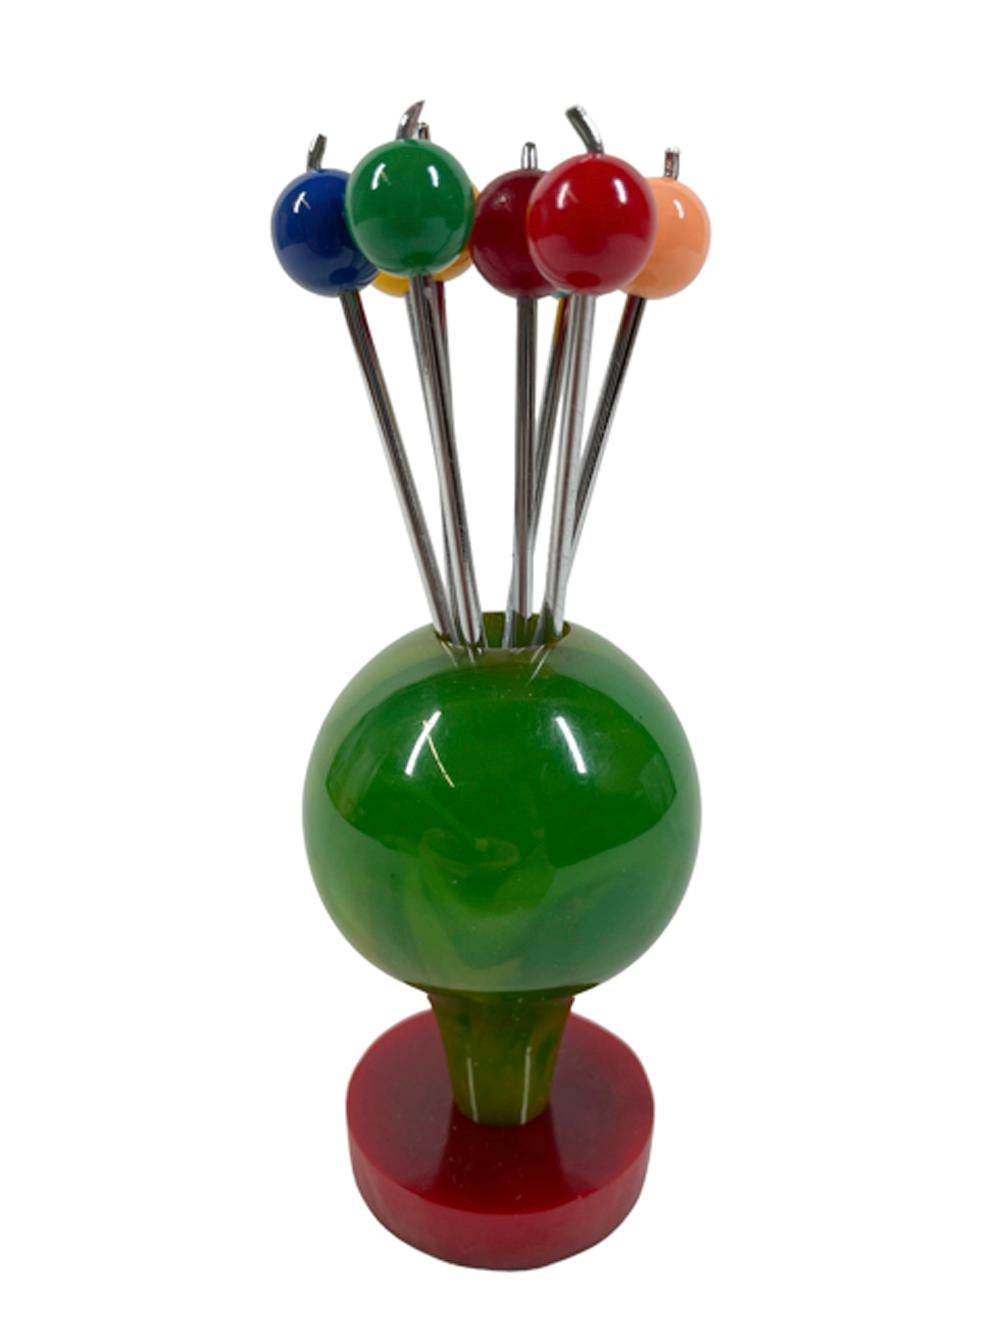 Pics à cocktail Art déco en bakélite - huit pics chromés fourchus présentés comme un bouquet de ballons, chacun avec un embout de boule de couleur différente maintenu dans un support en forme de ballon vert jade tacheté s'élevant d'une base en forme